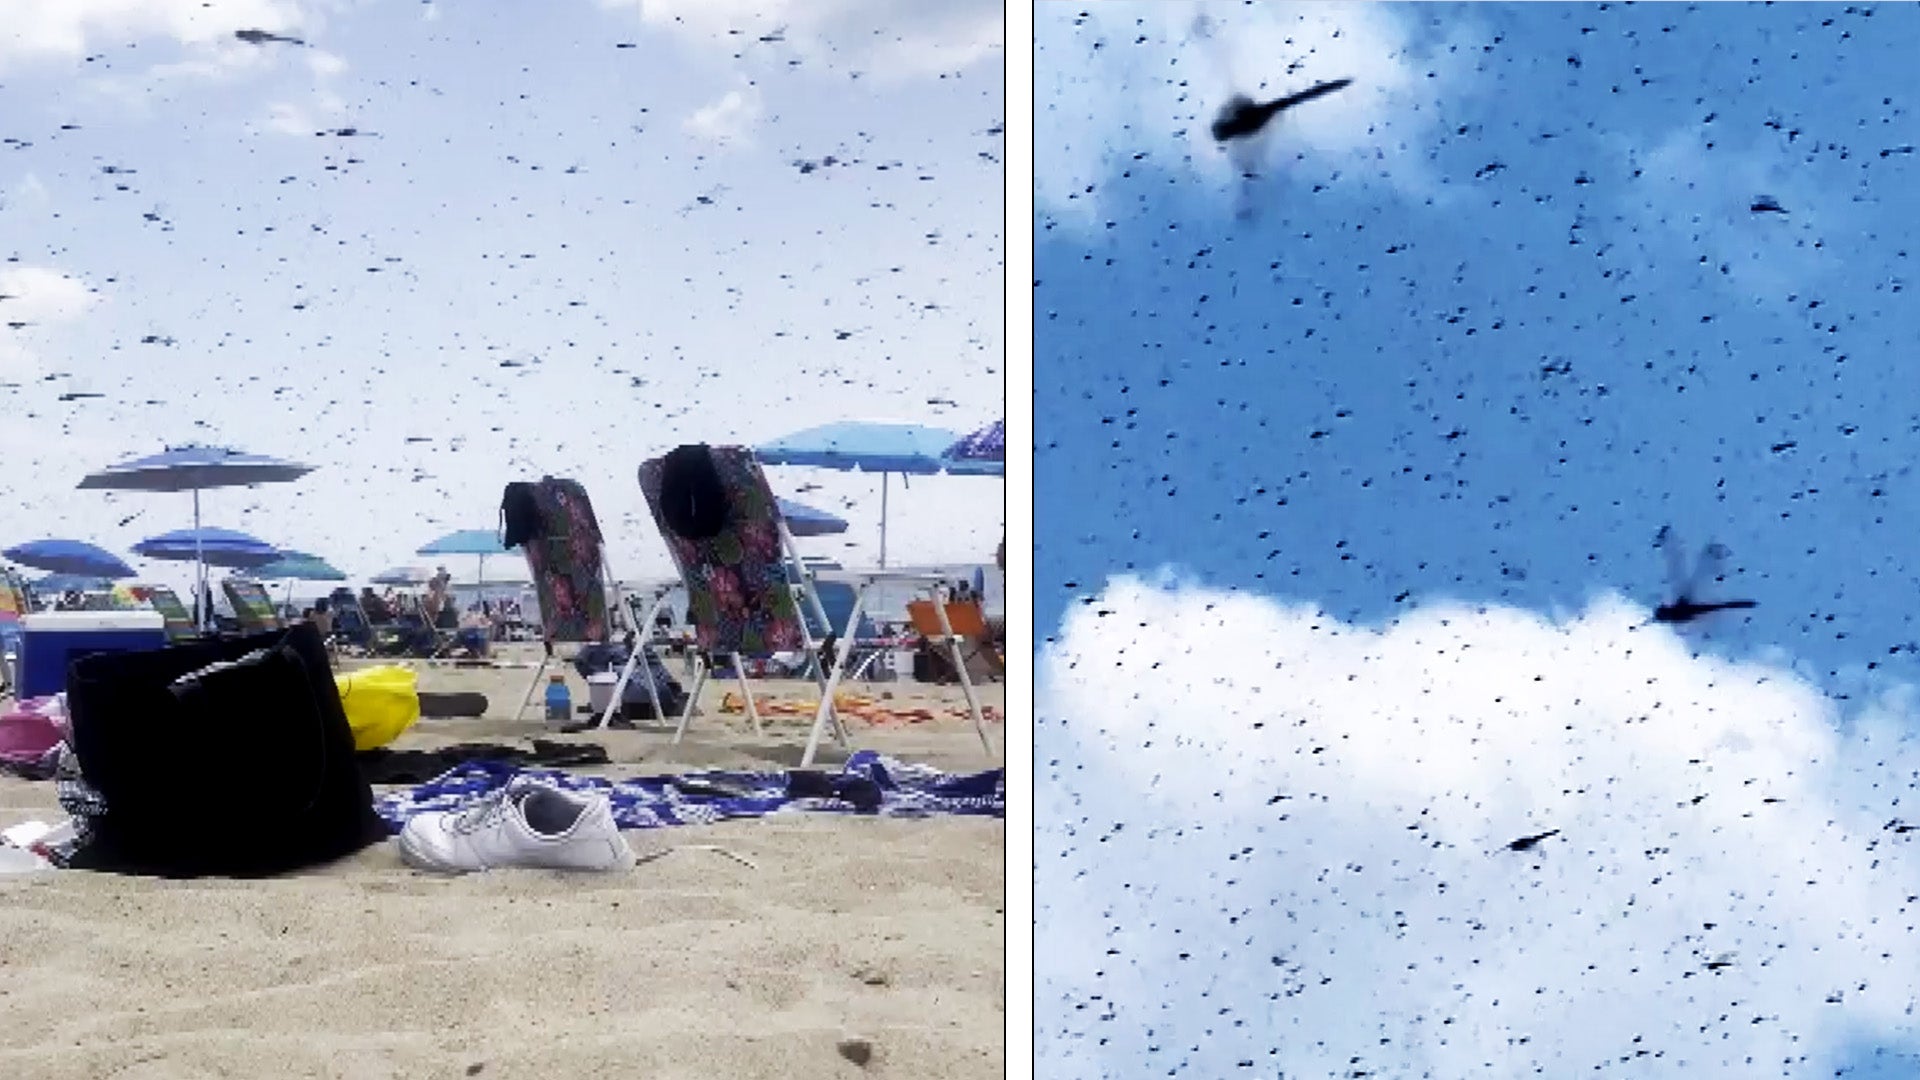 Dragonflies swarm the beach